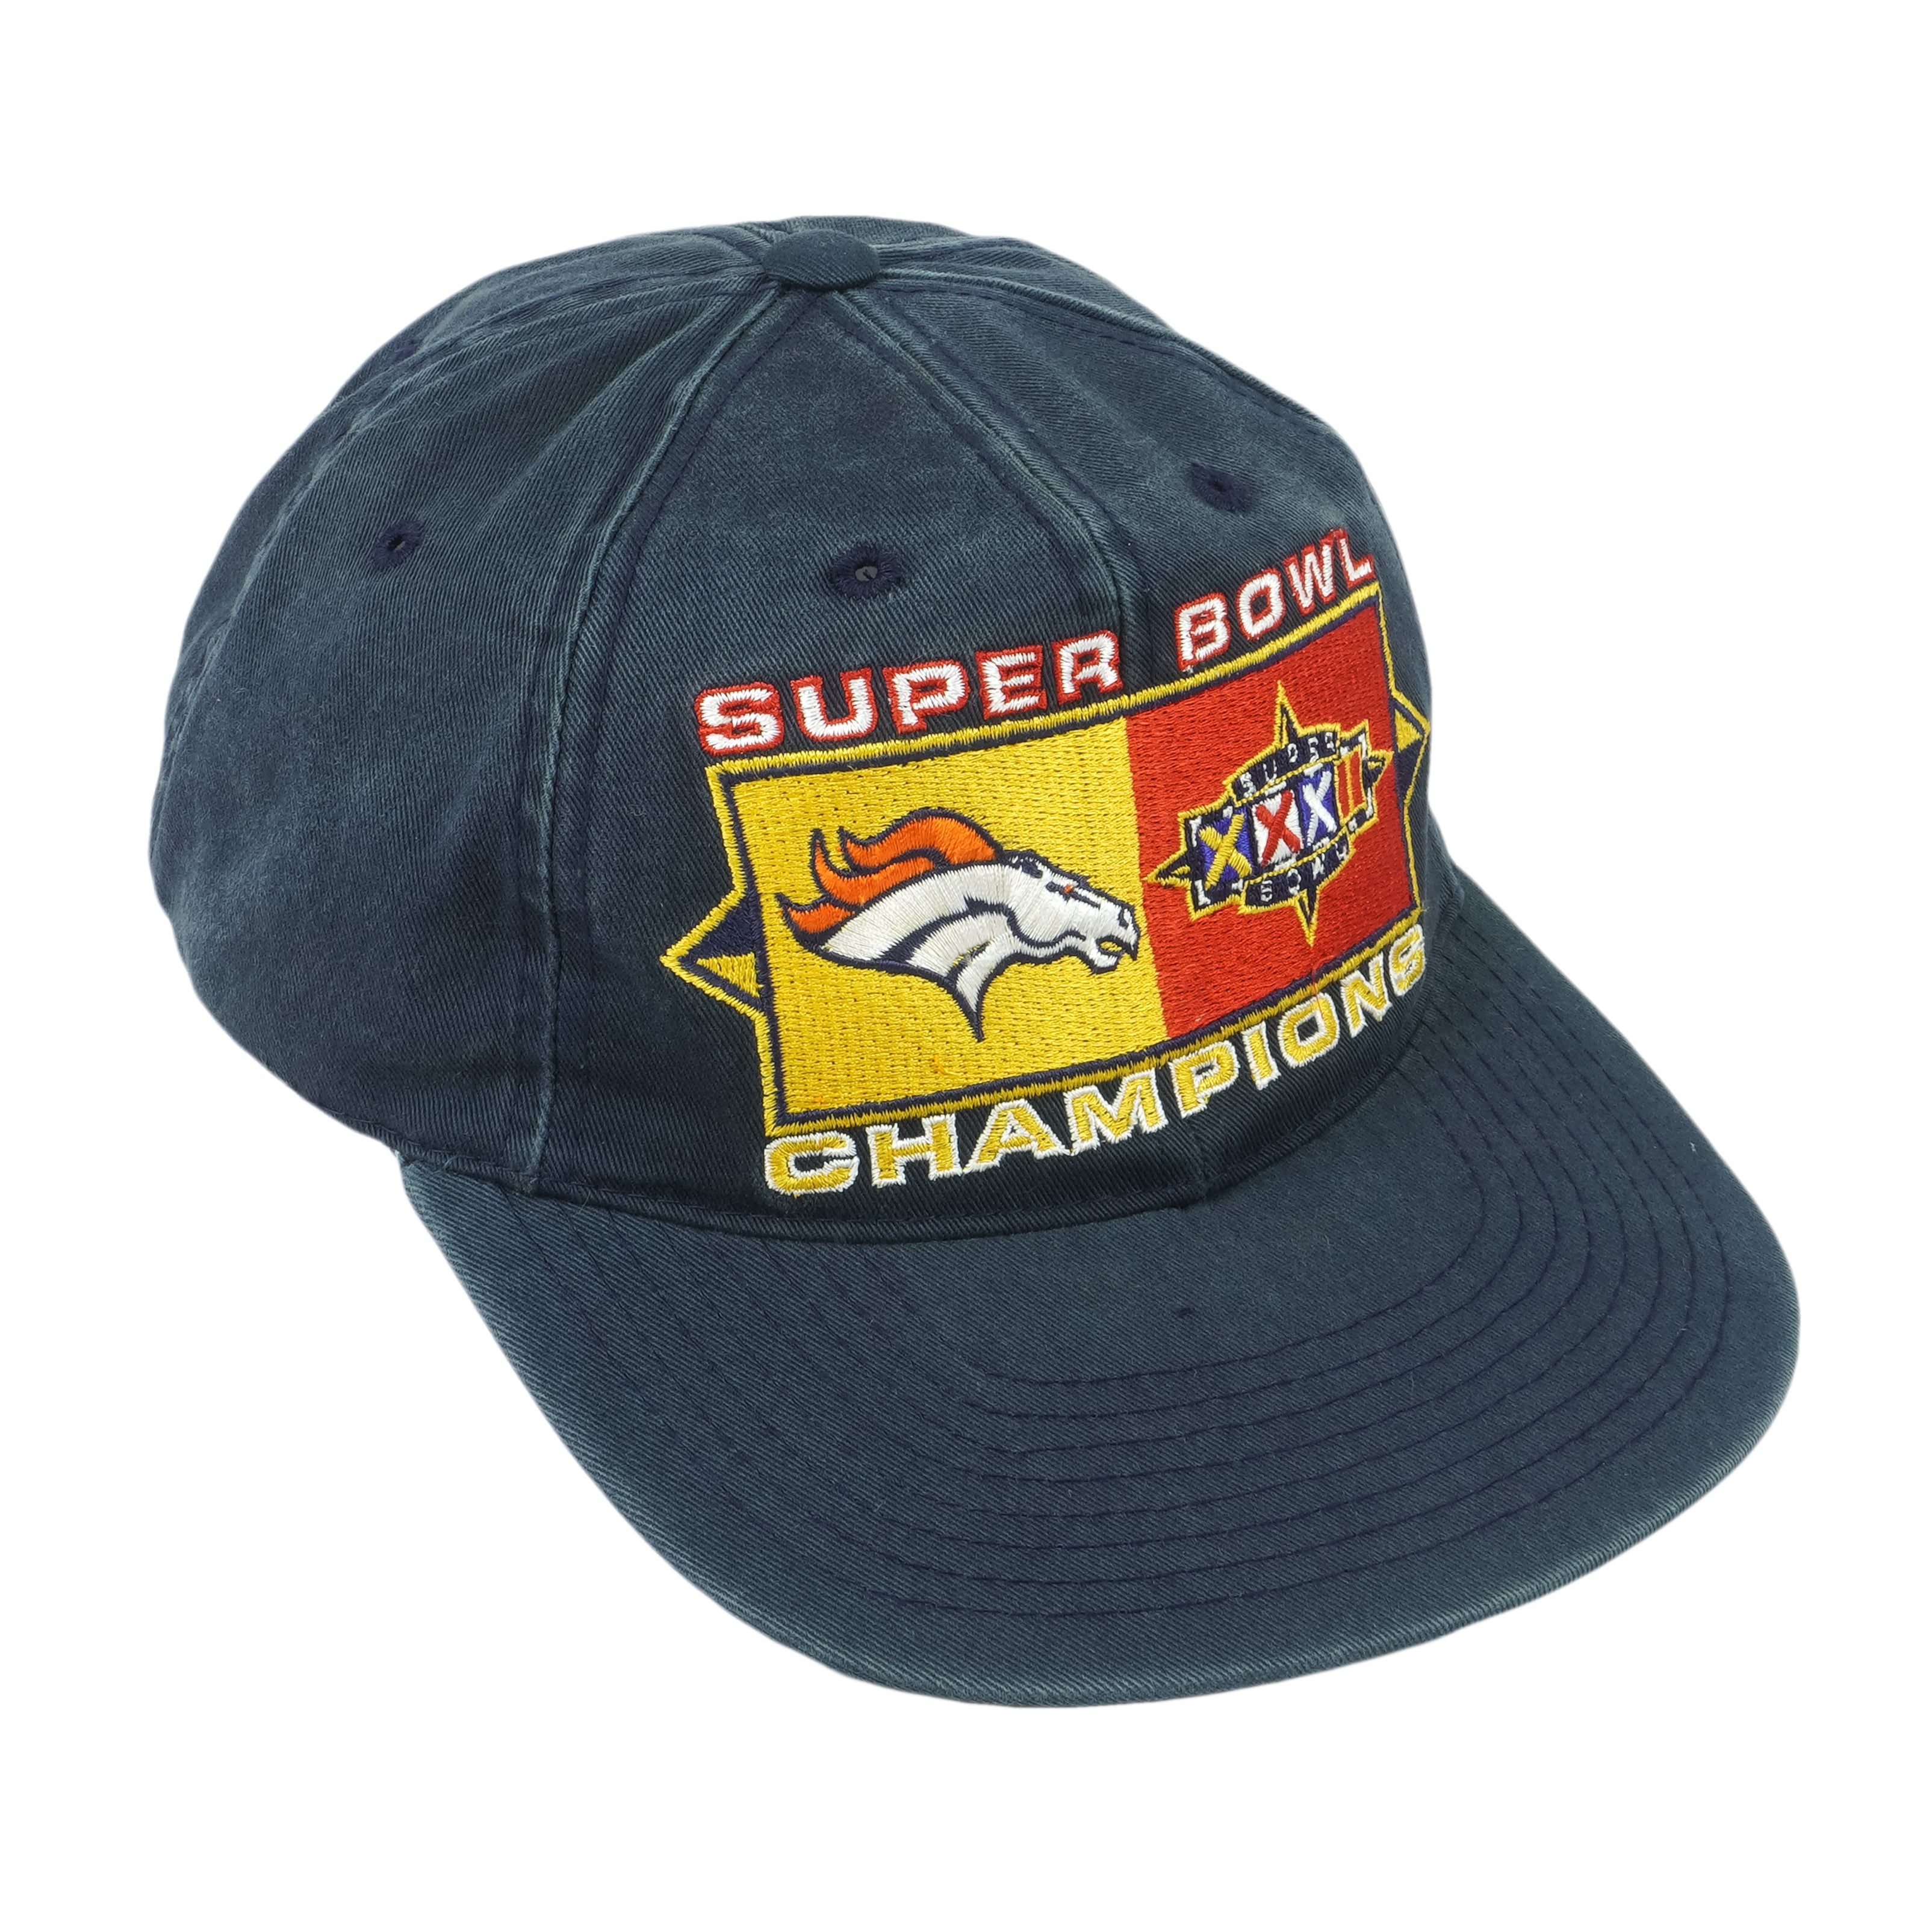 Vintage Denver Broncos NFL Snapback Hat